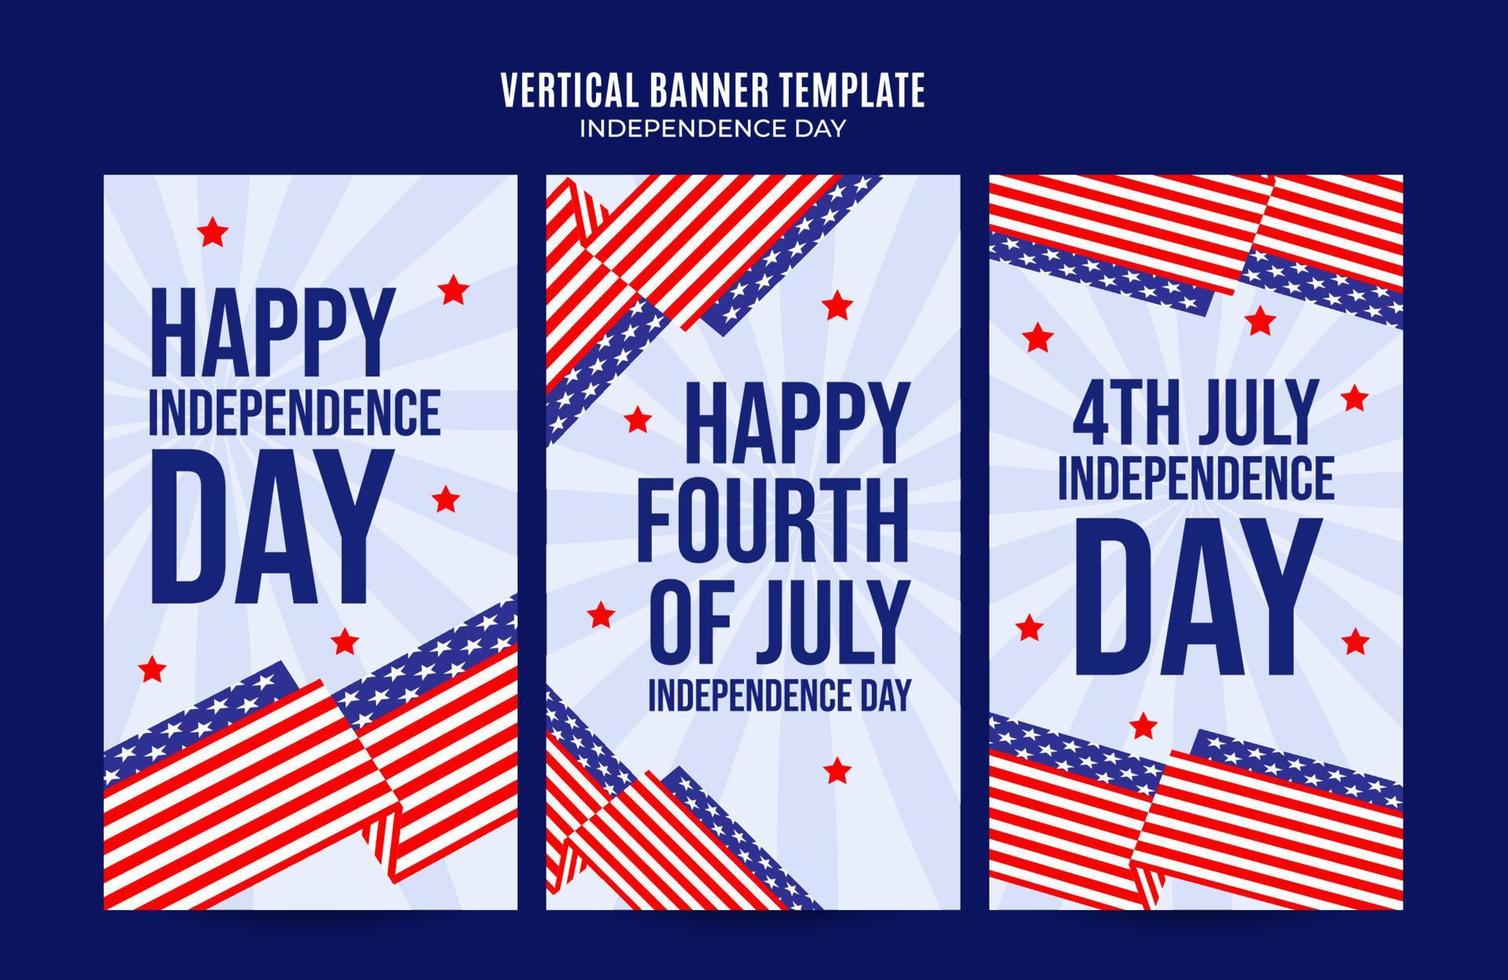 felice 4 luglio - banner web usa giorno dell'indipendenza per poster verticale dei social media, banner, area spaziale e sfondo vettore